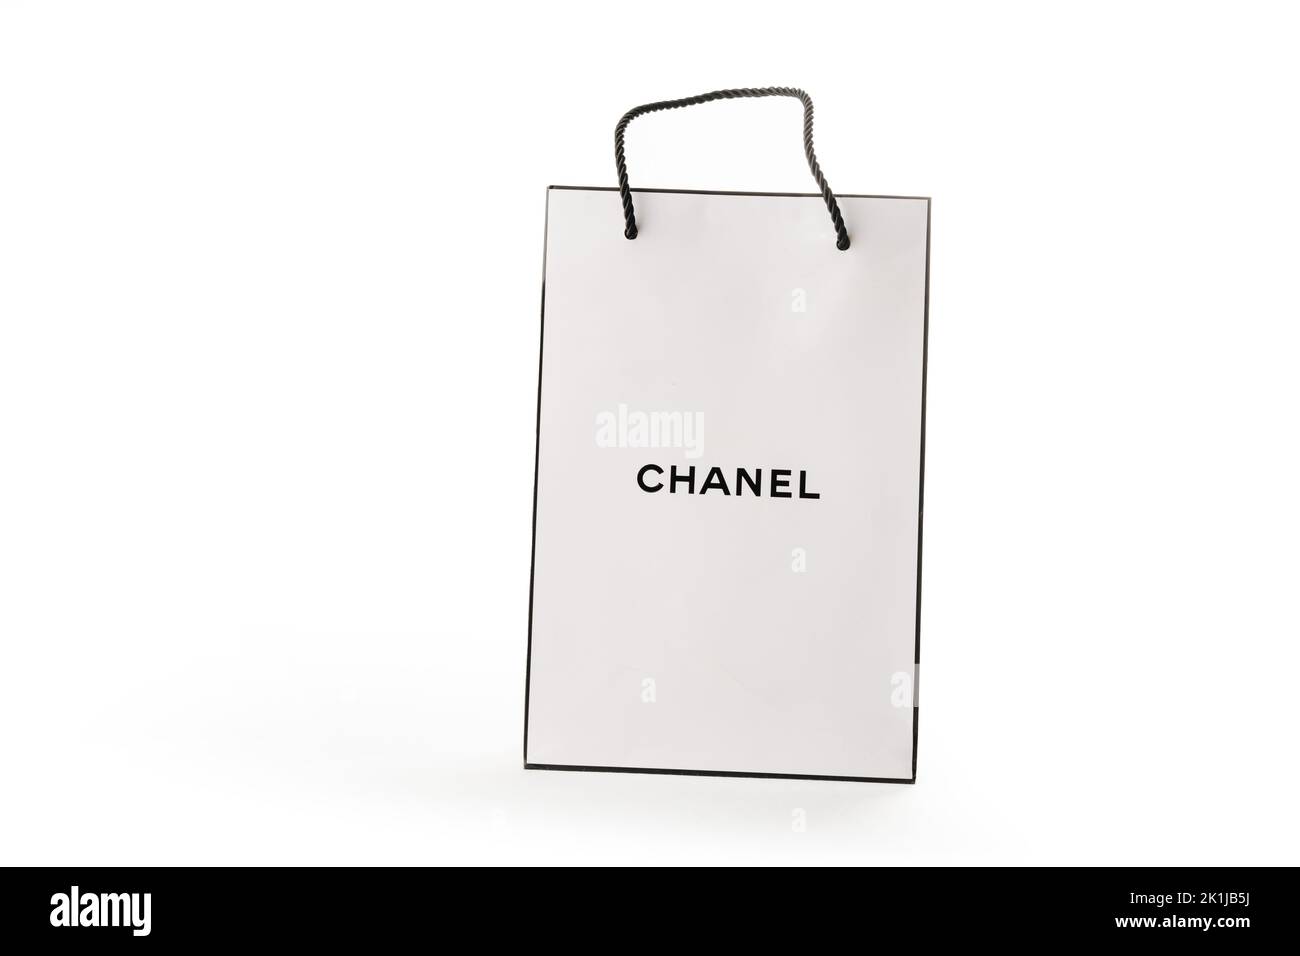 Zypern, Paphos - 08. SEPTEMBER 2022: Zweidimensionales Frontalbild des Markenpapierbeutels des Chanel-Parfüms. Auf weißem Hintergrund. Stockfoto